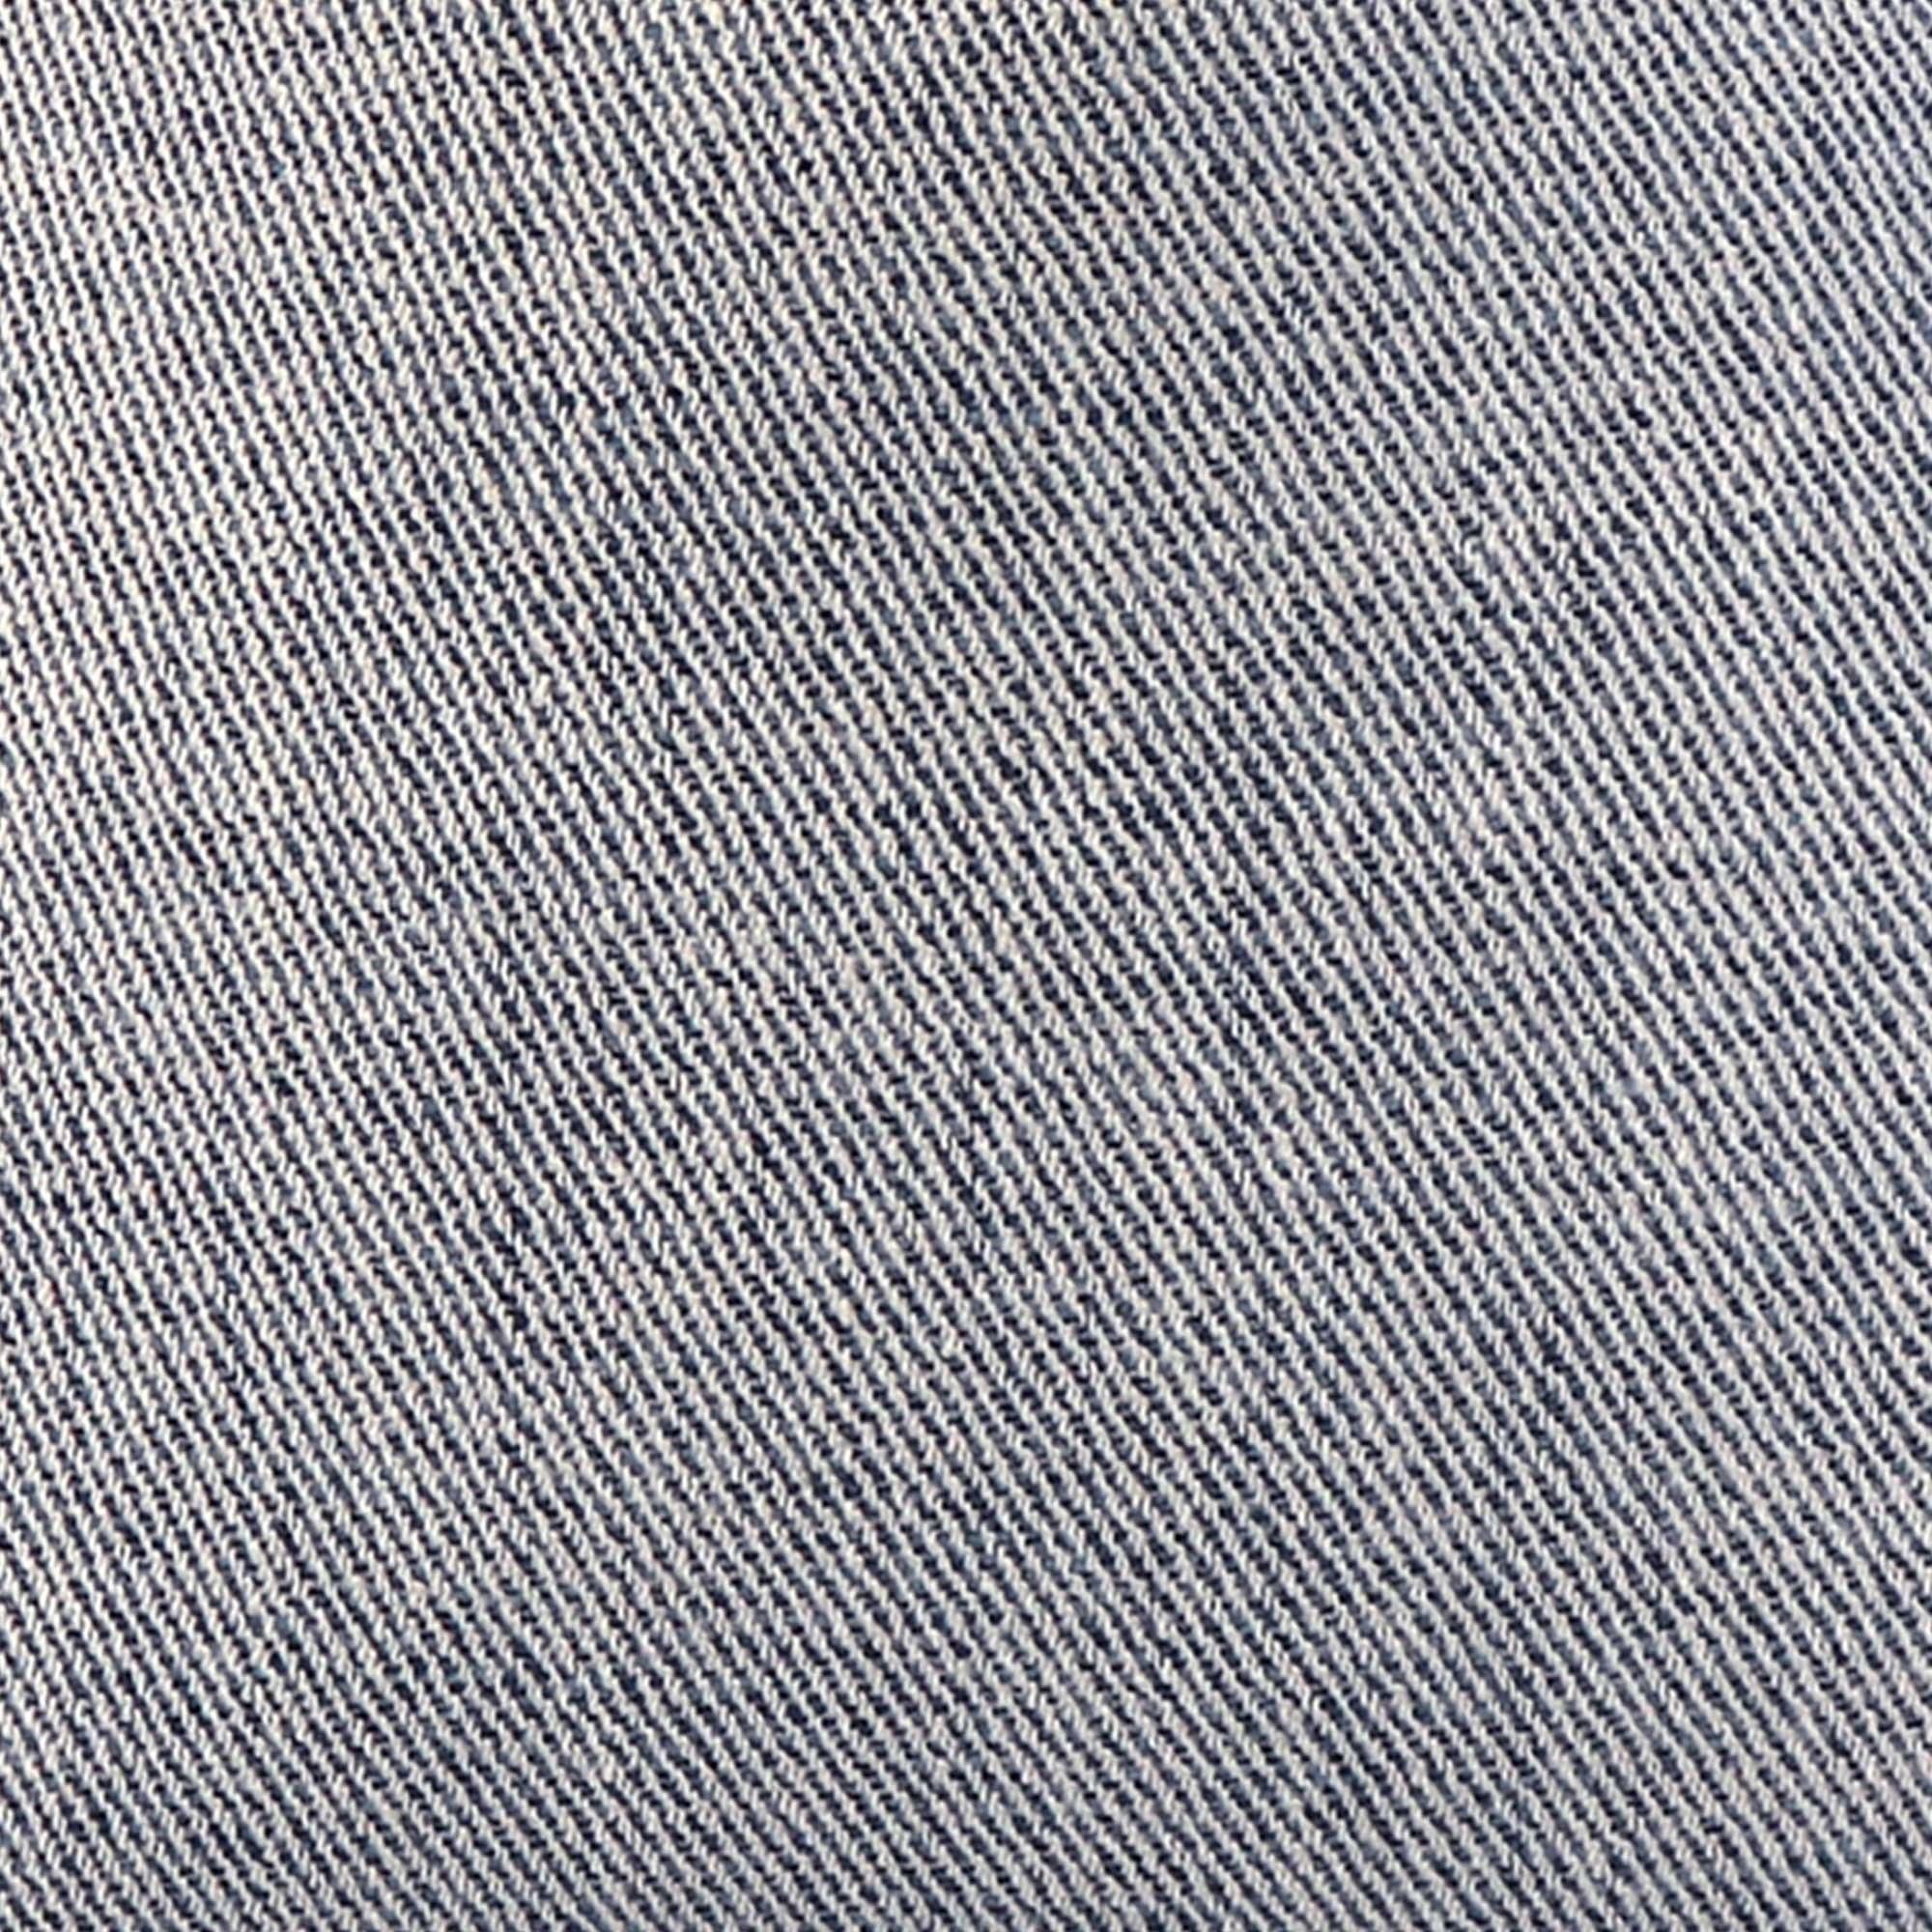 Zebras Petite Denim / 4x4 inch Fabric Swatch - Chloe & Olive